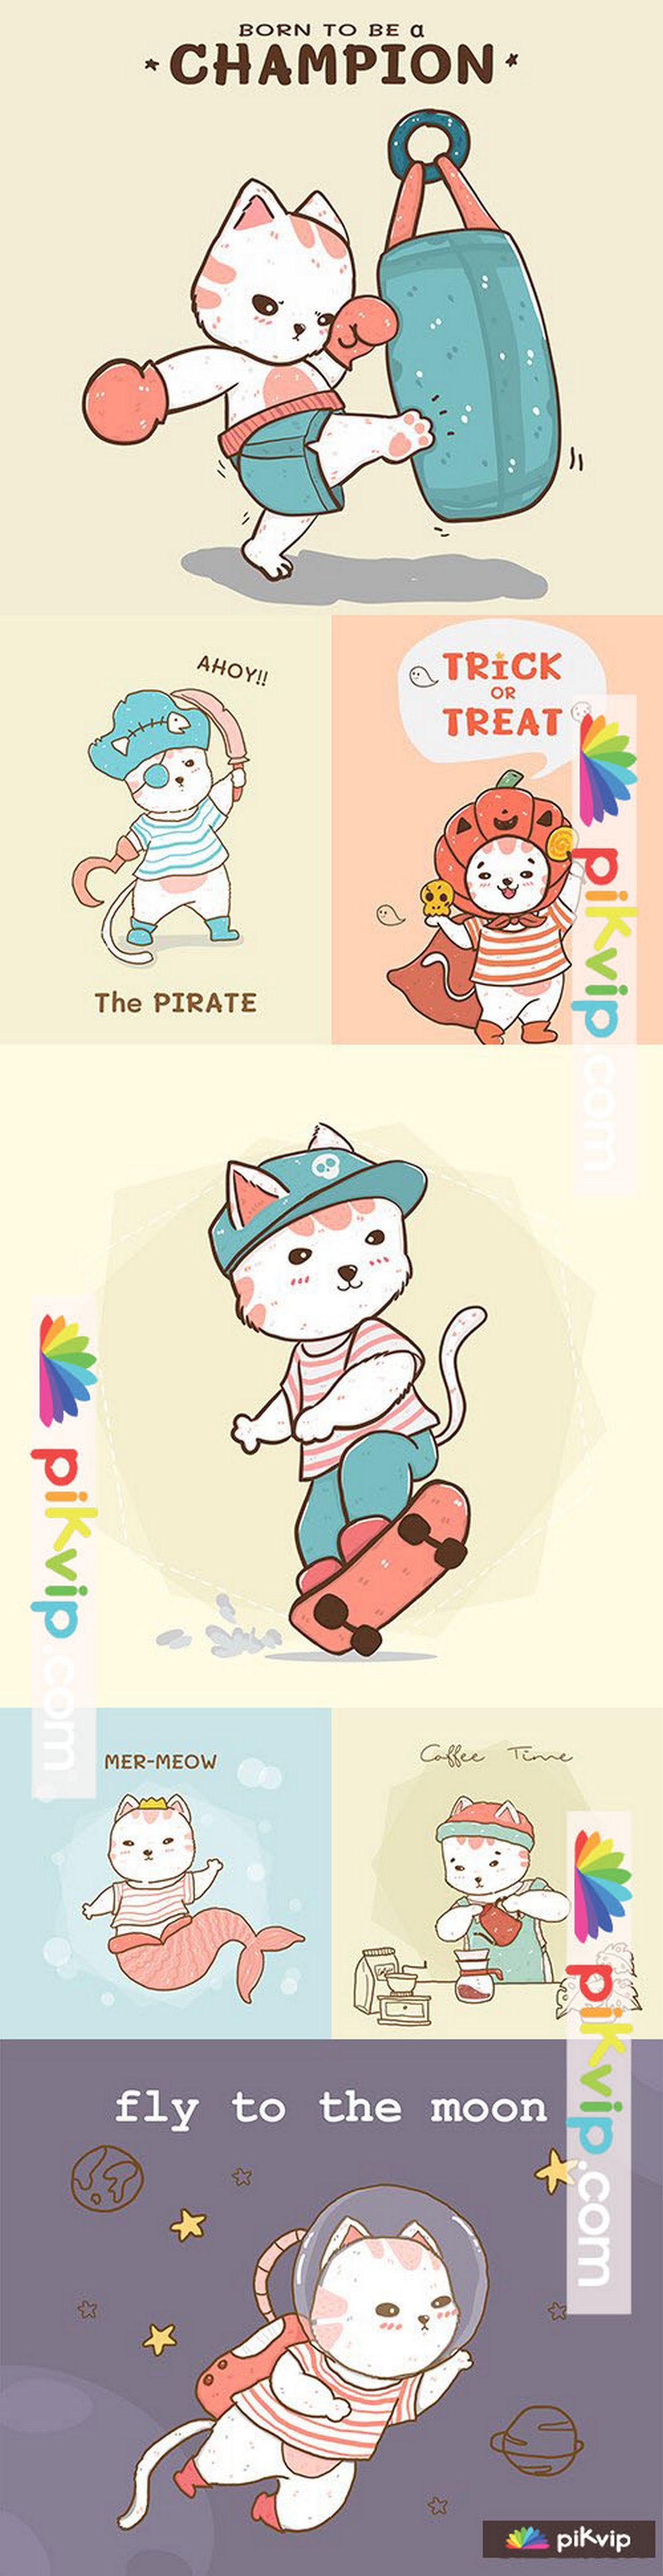 Cute cartoon cat with sports accessories flat design